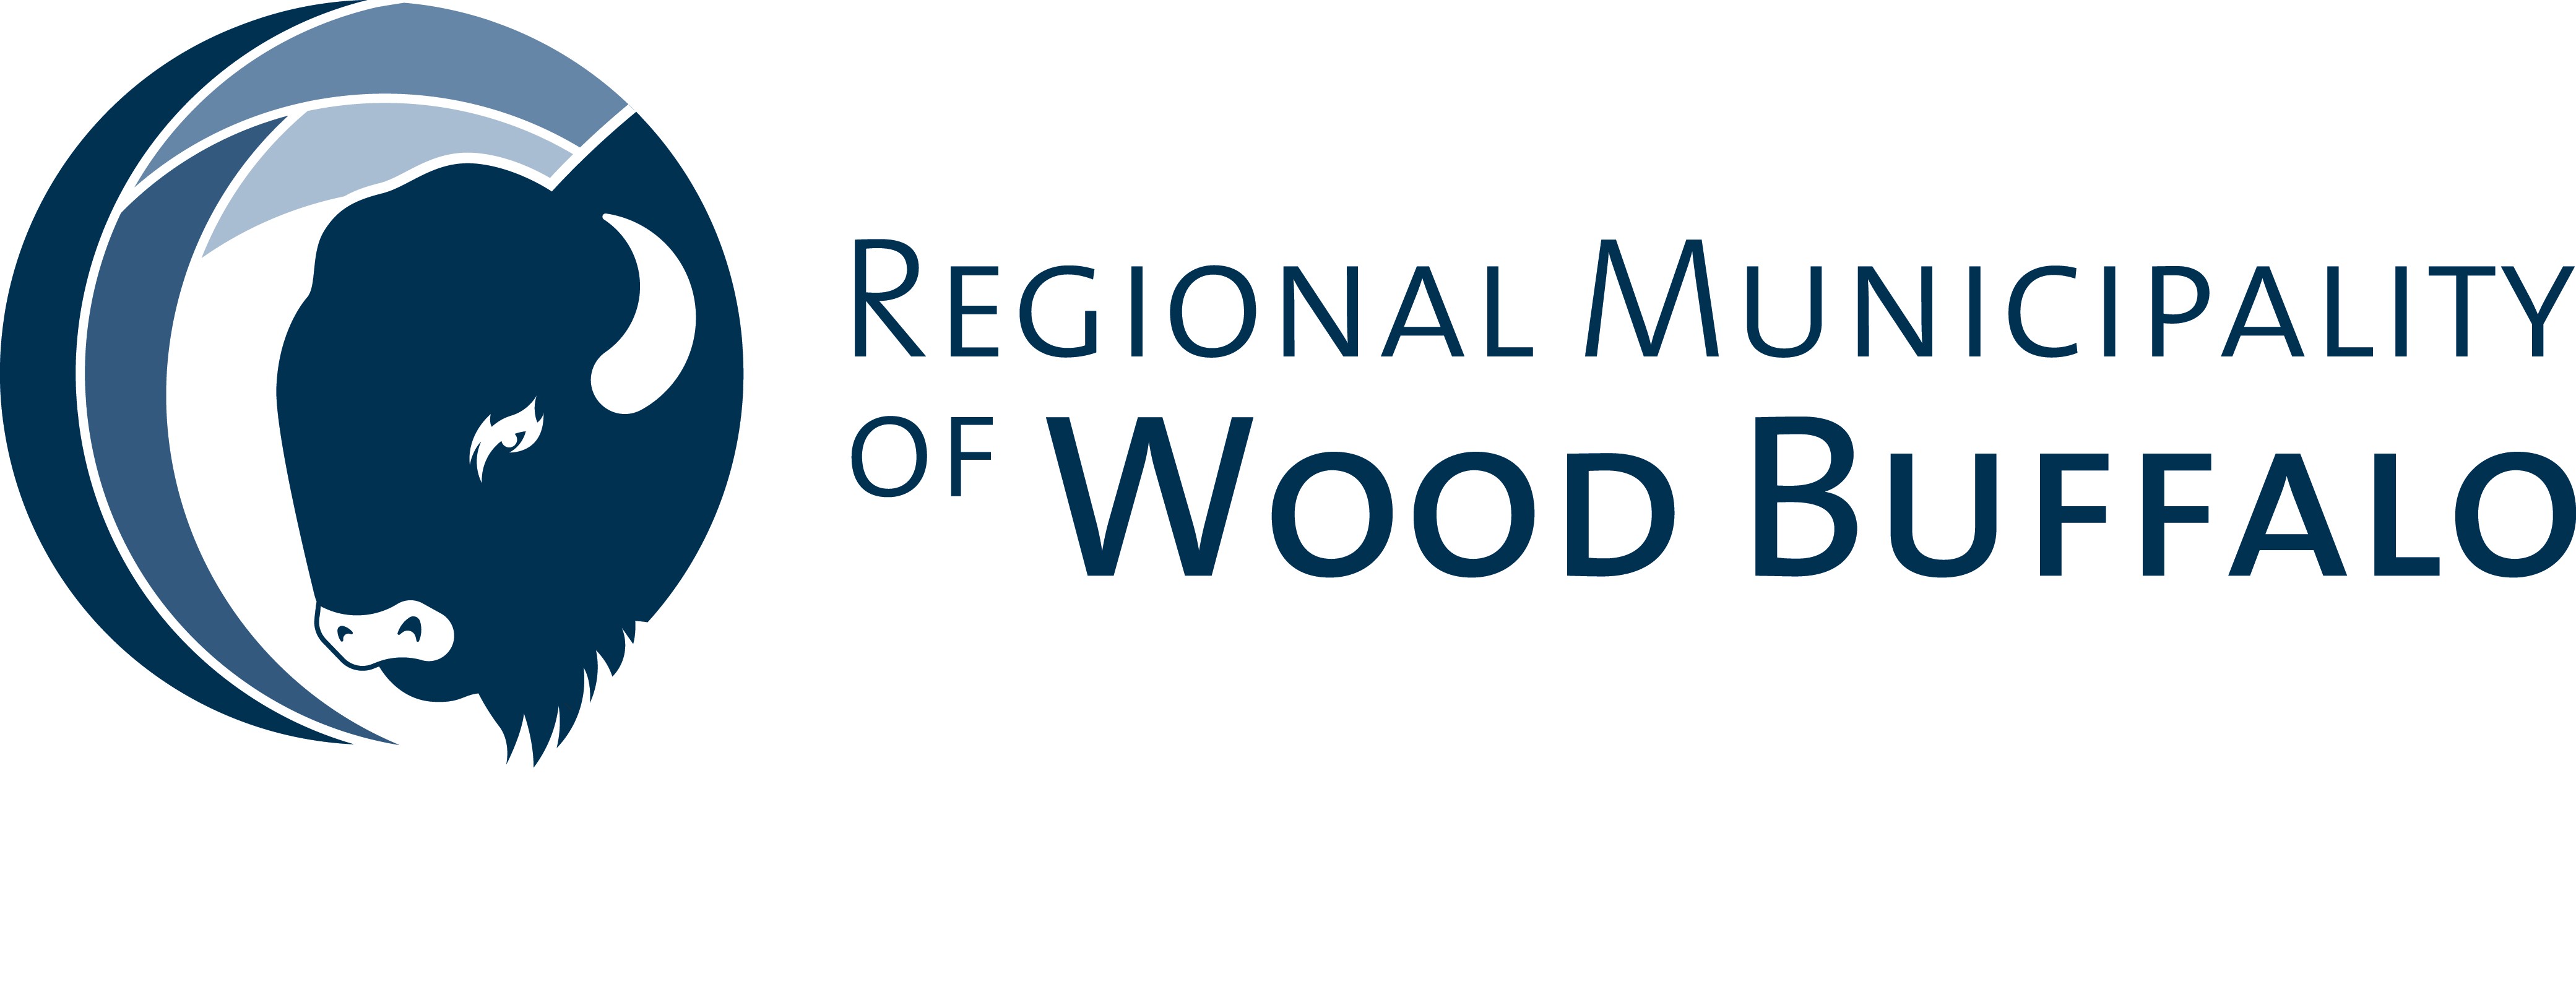 regional municipality of wood buffalo logo